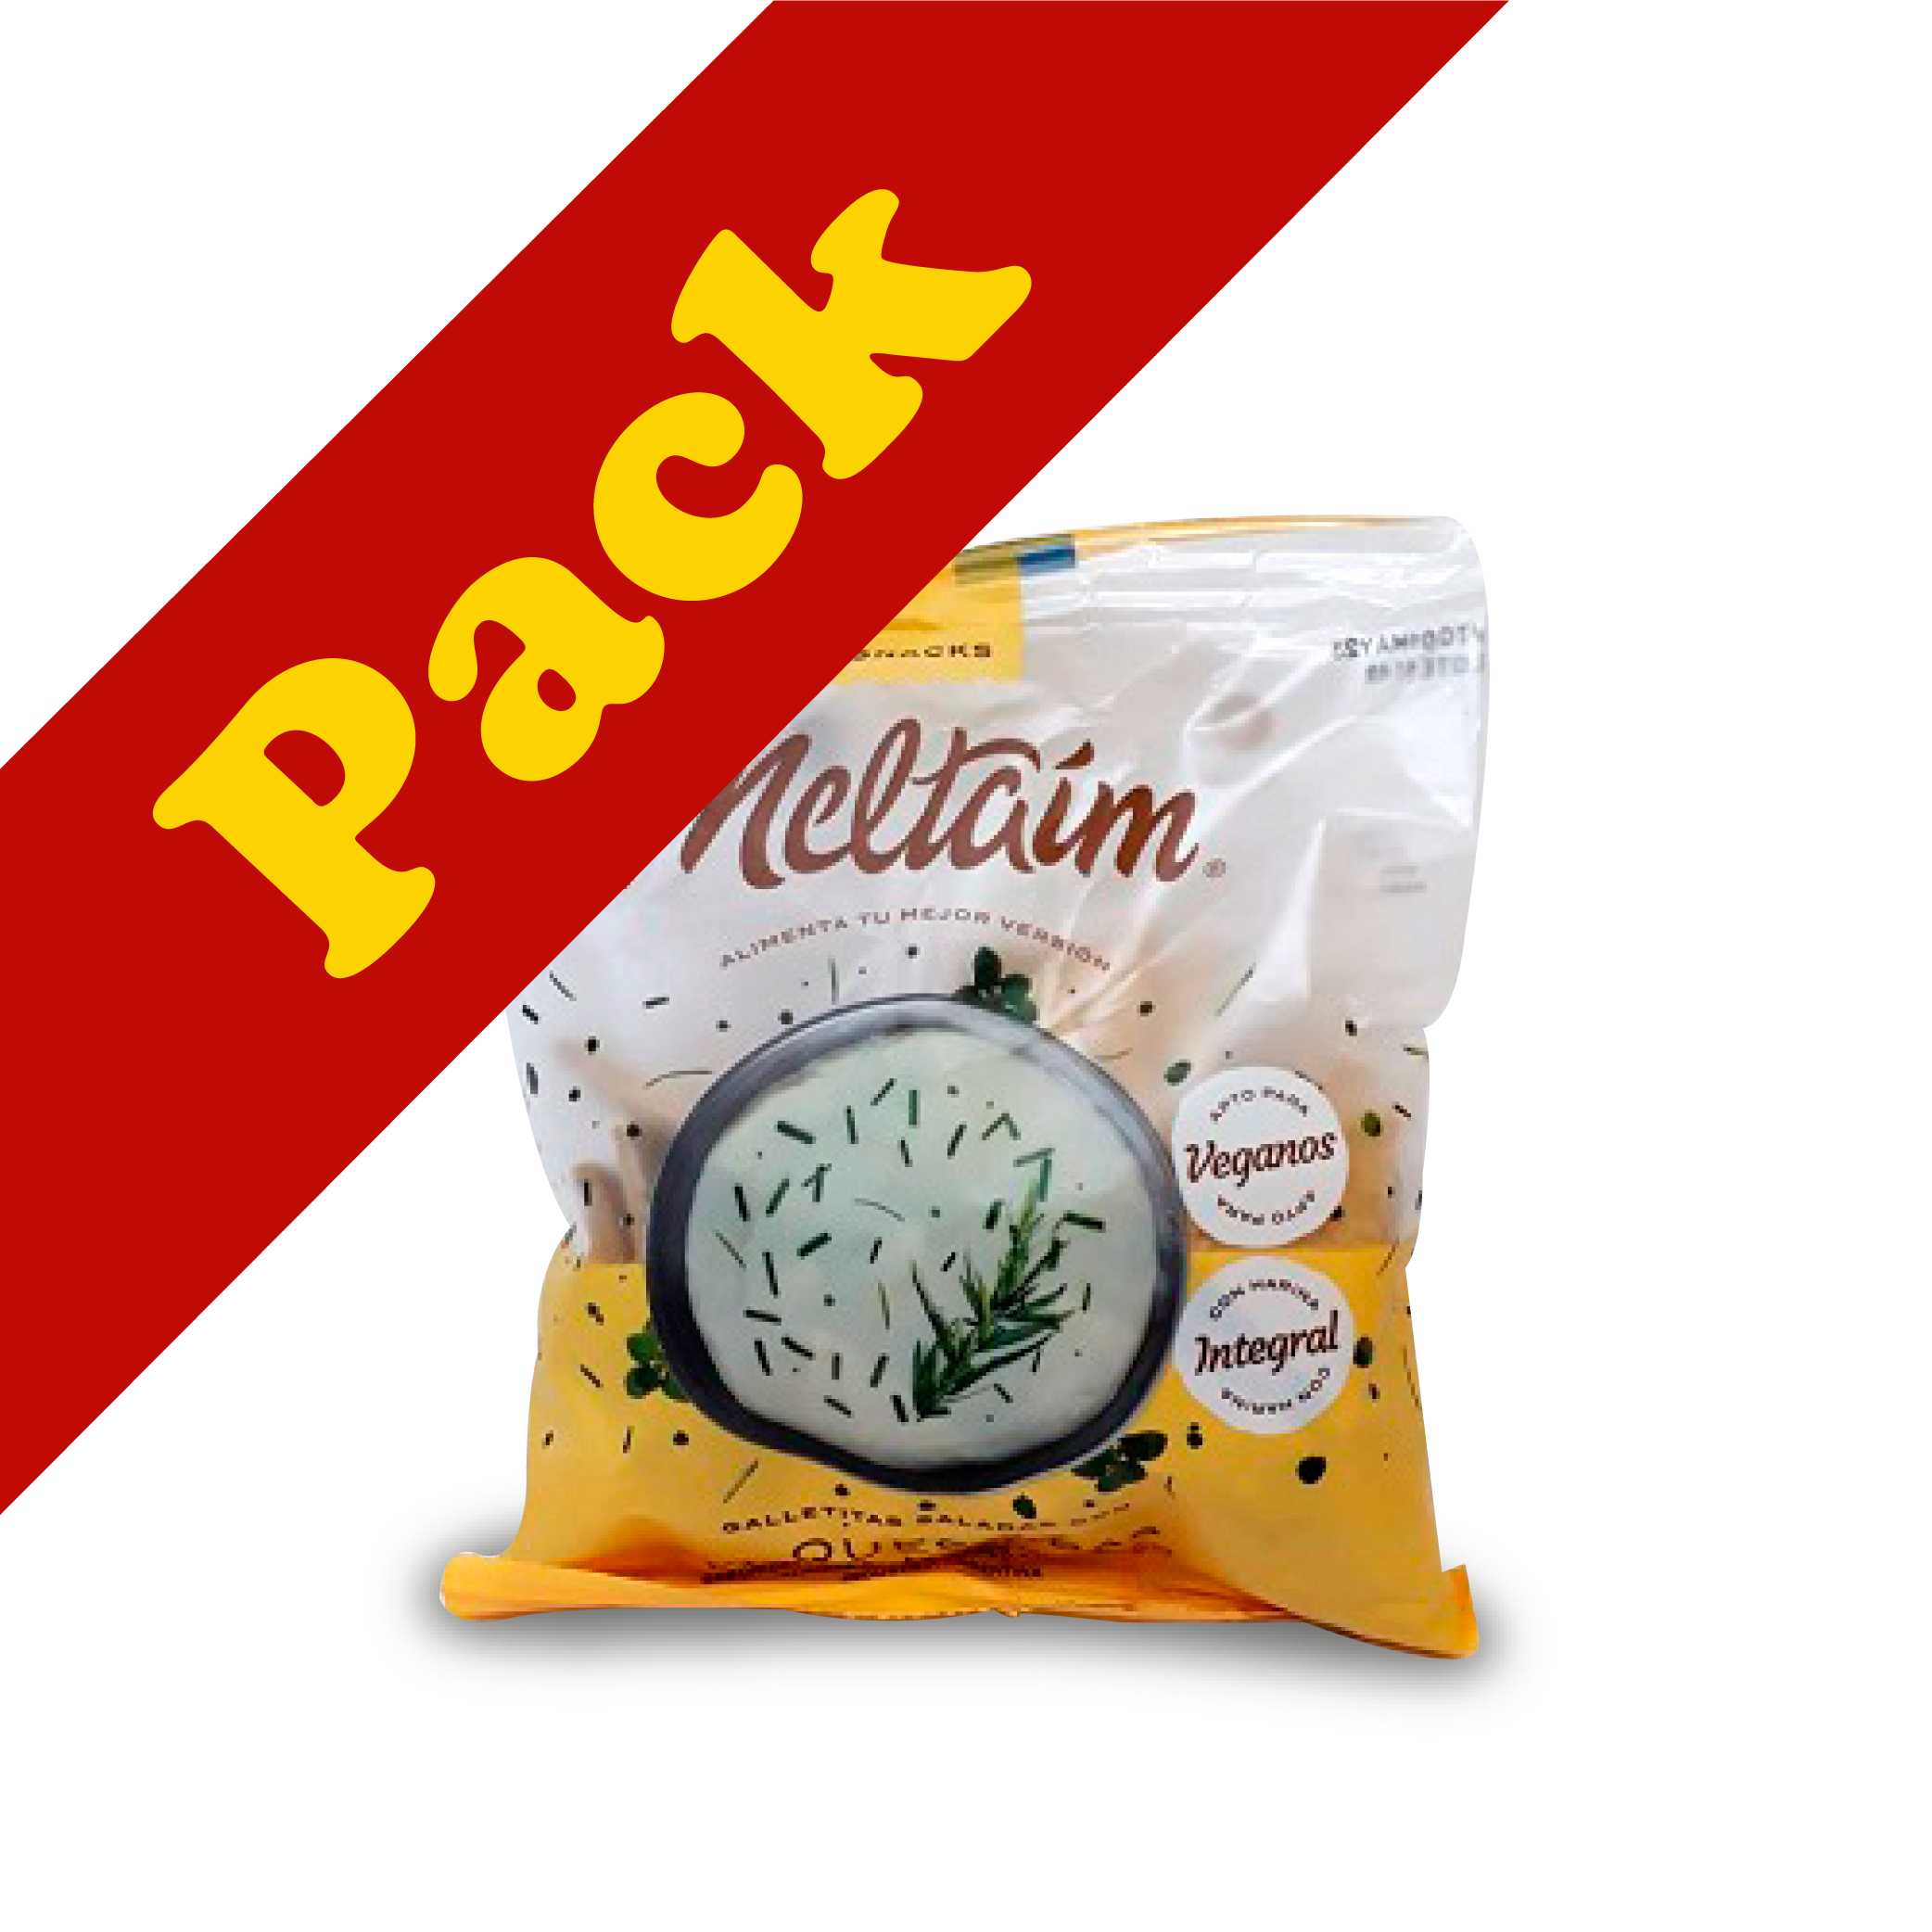 Meltaim - Snack C/ Queso y Finas Hierbas PROMO 2 x 150gr